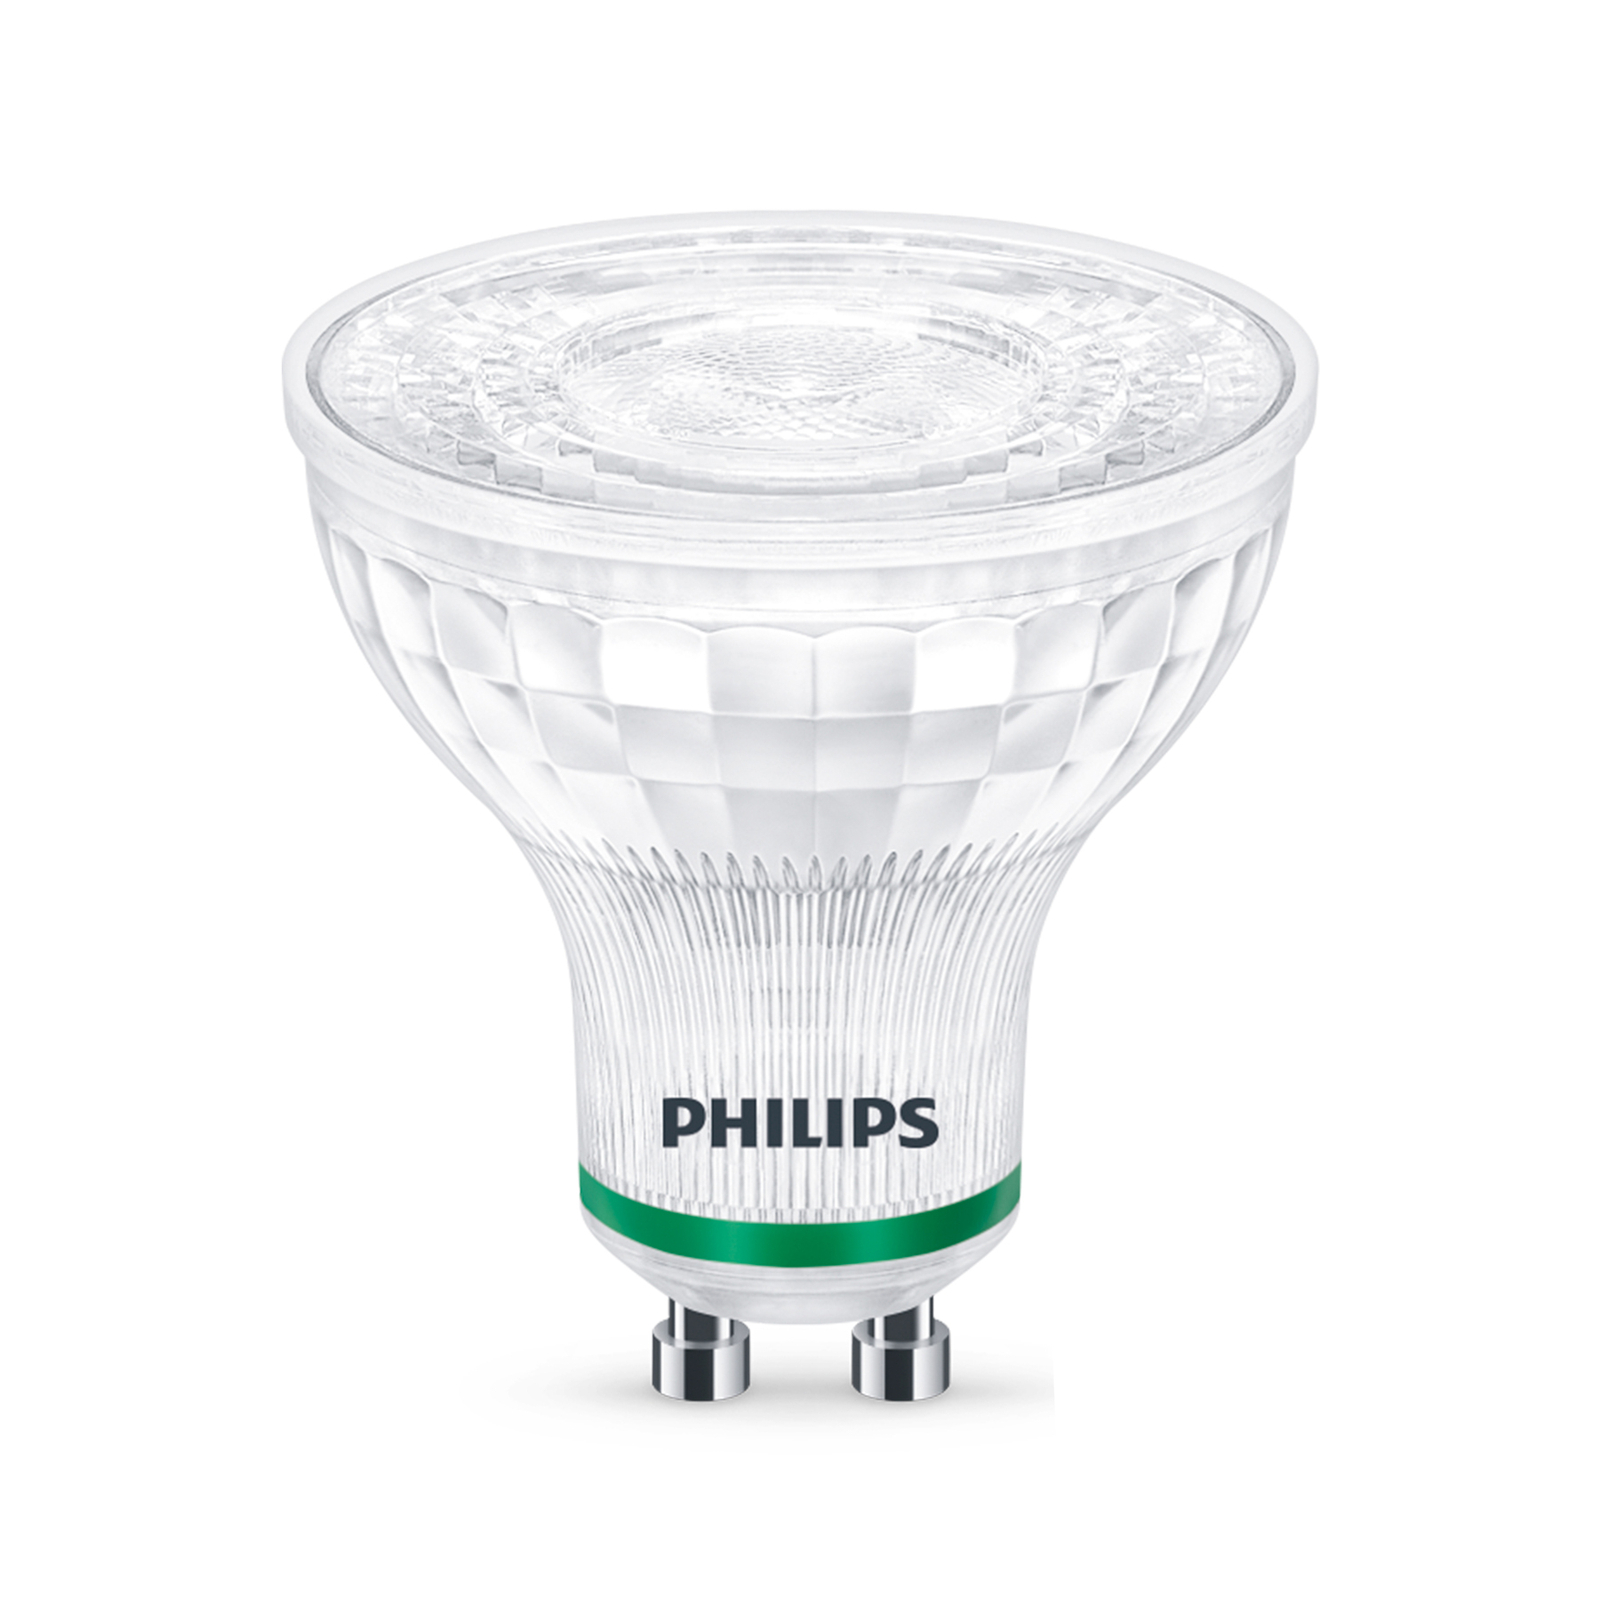 Philips reflectora LED GU10 2,4W 380lm 36° 4.000K